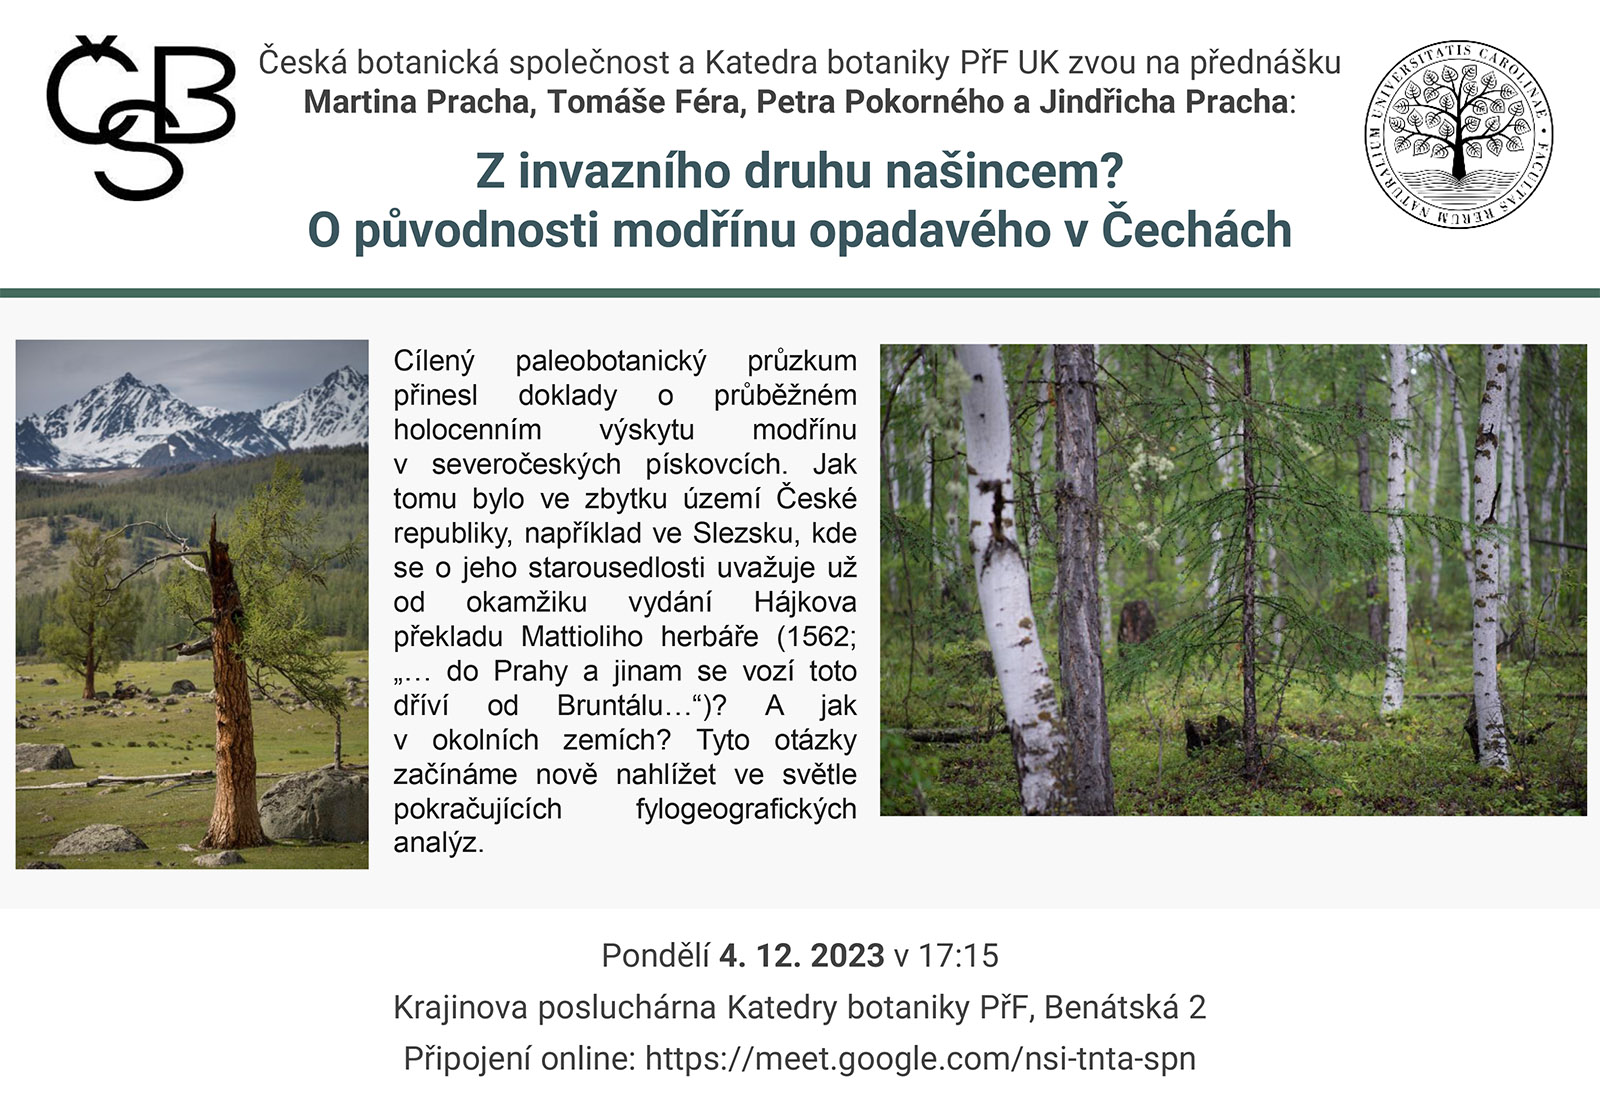 Přednáška pro českou botanickou společnost dne 4. 12. 2023